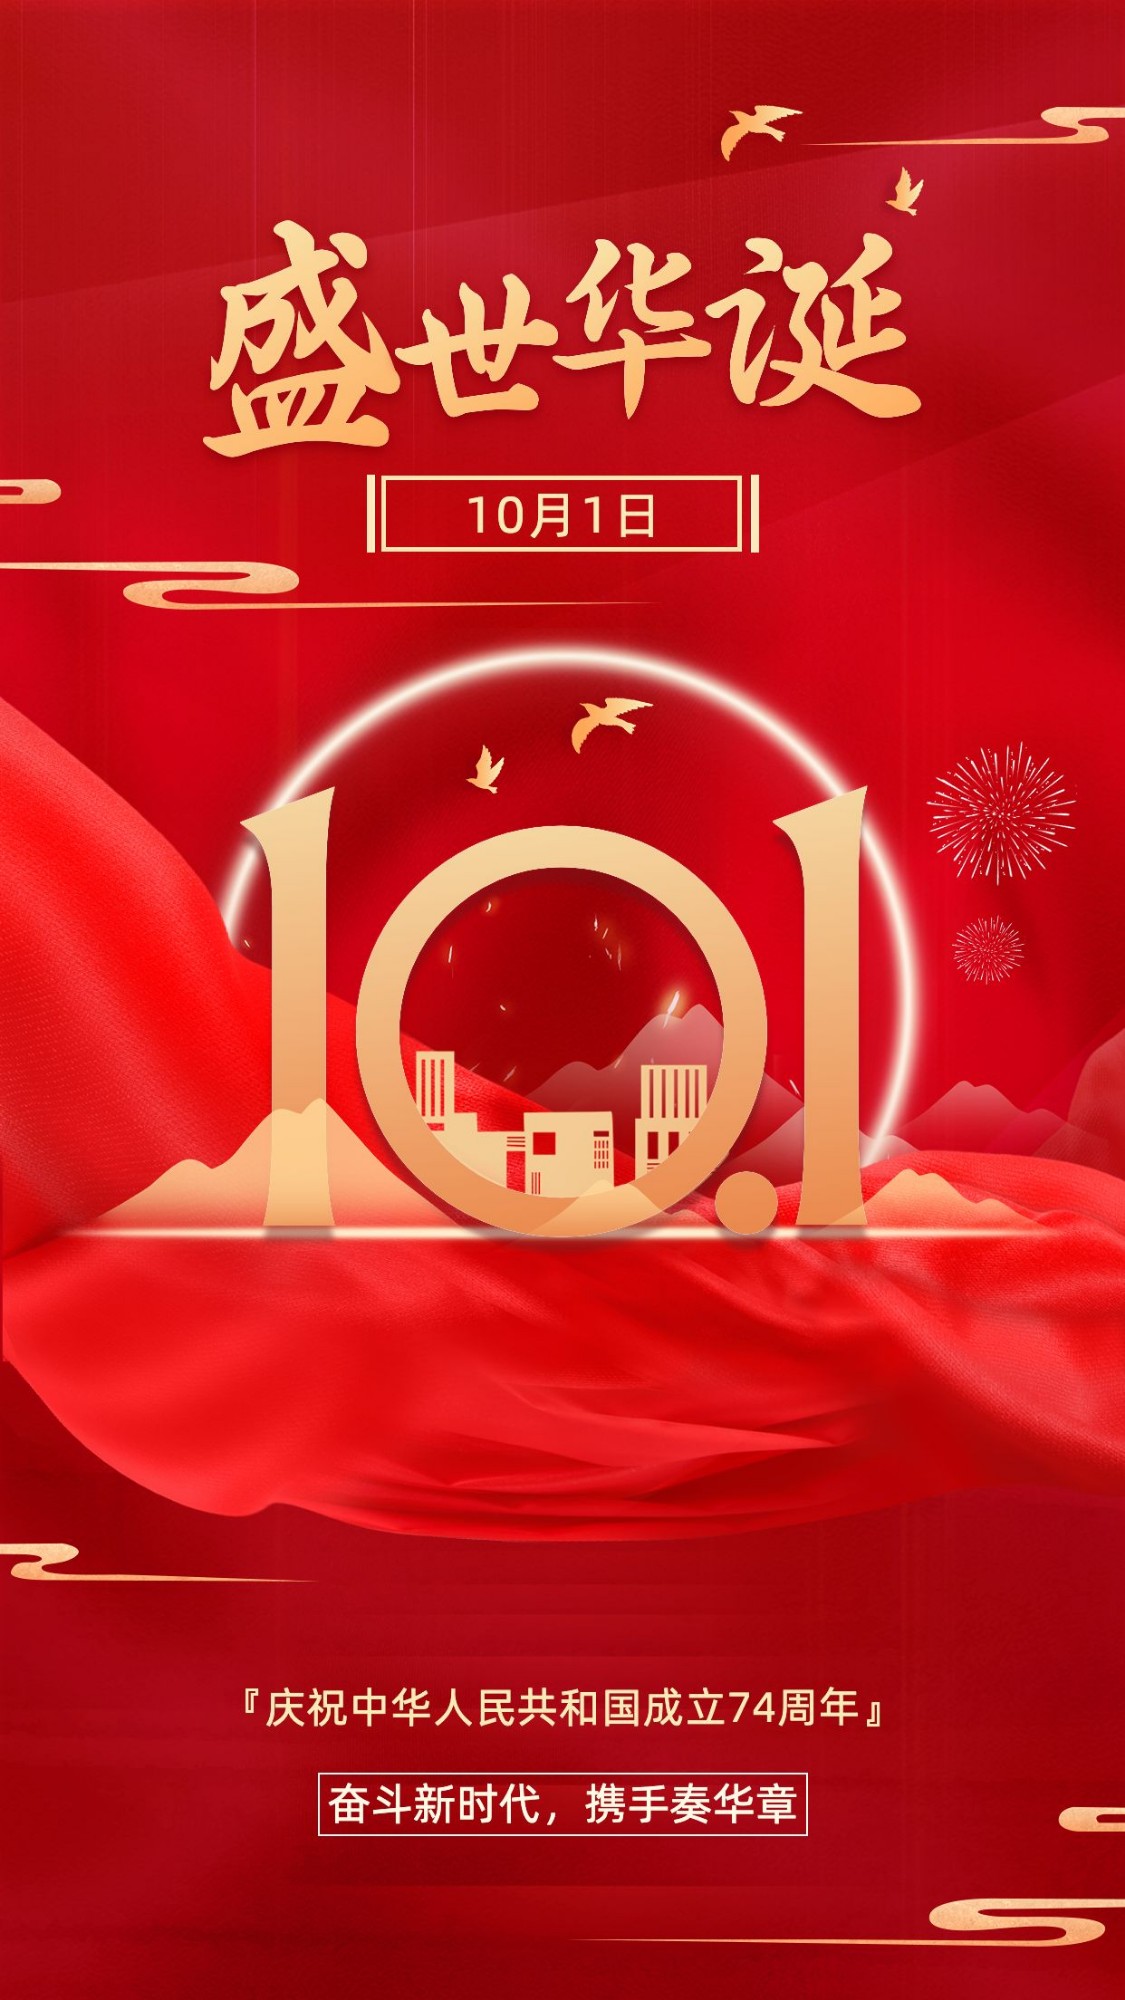 国庆节节日祝福合成手机海报